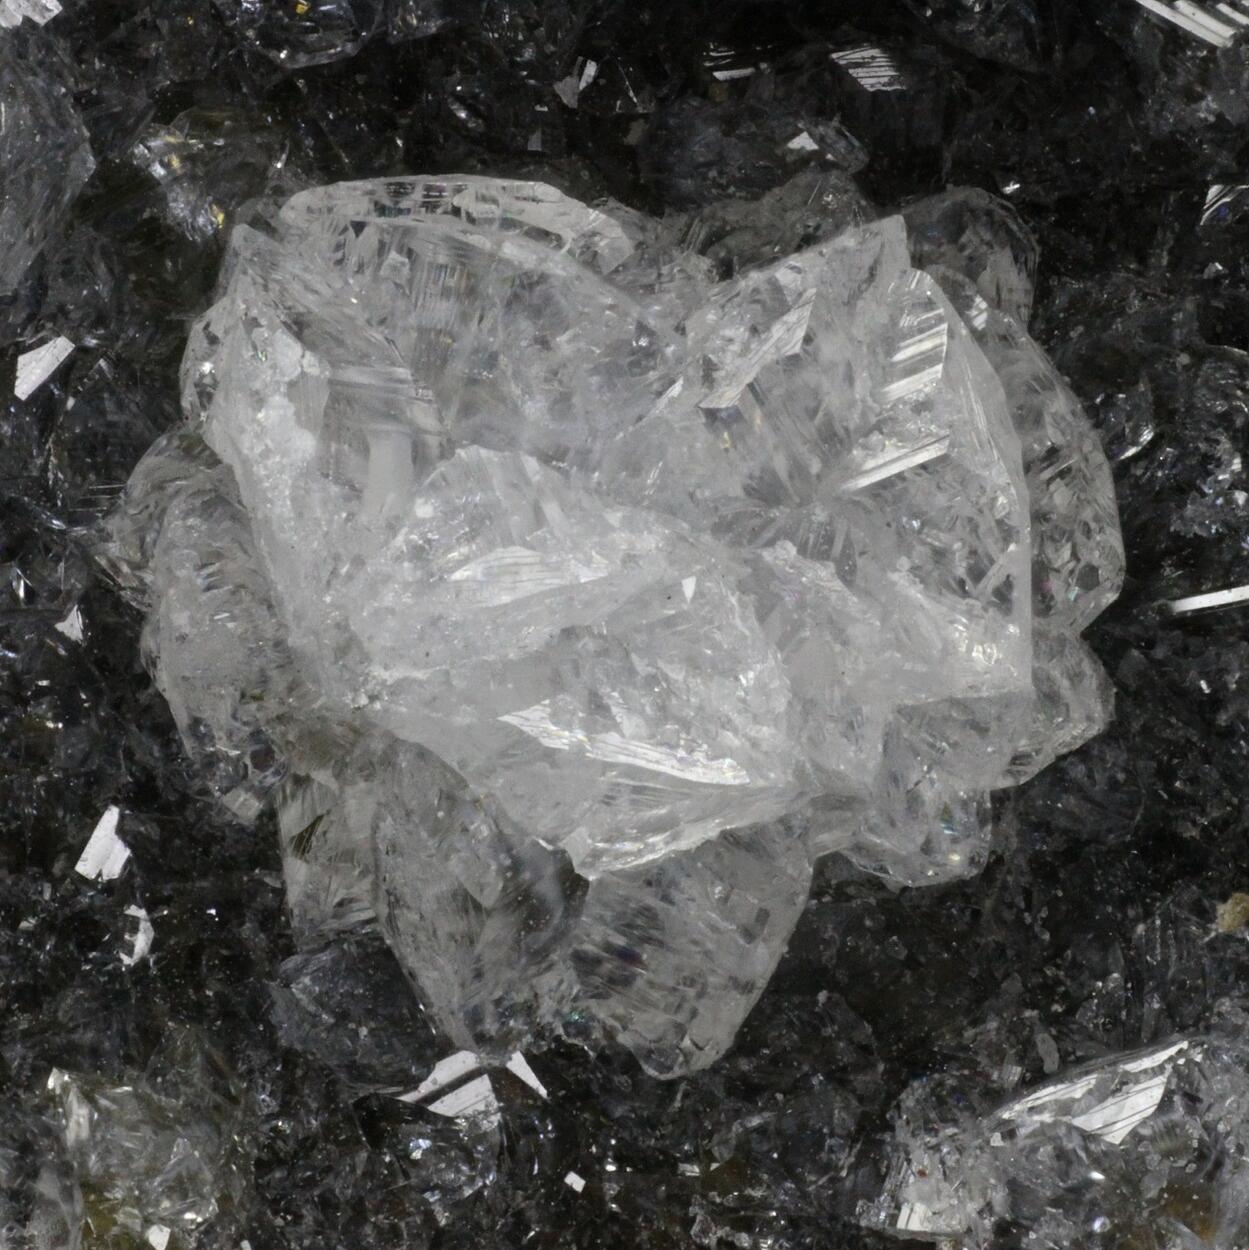 Phacolite